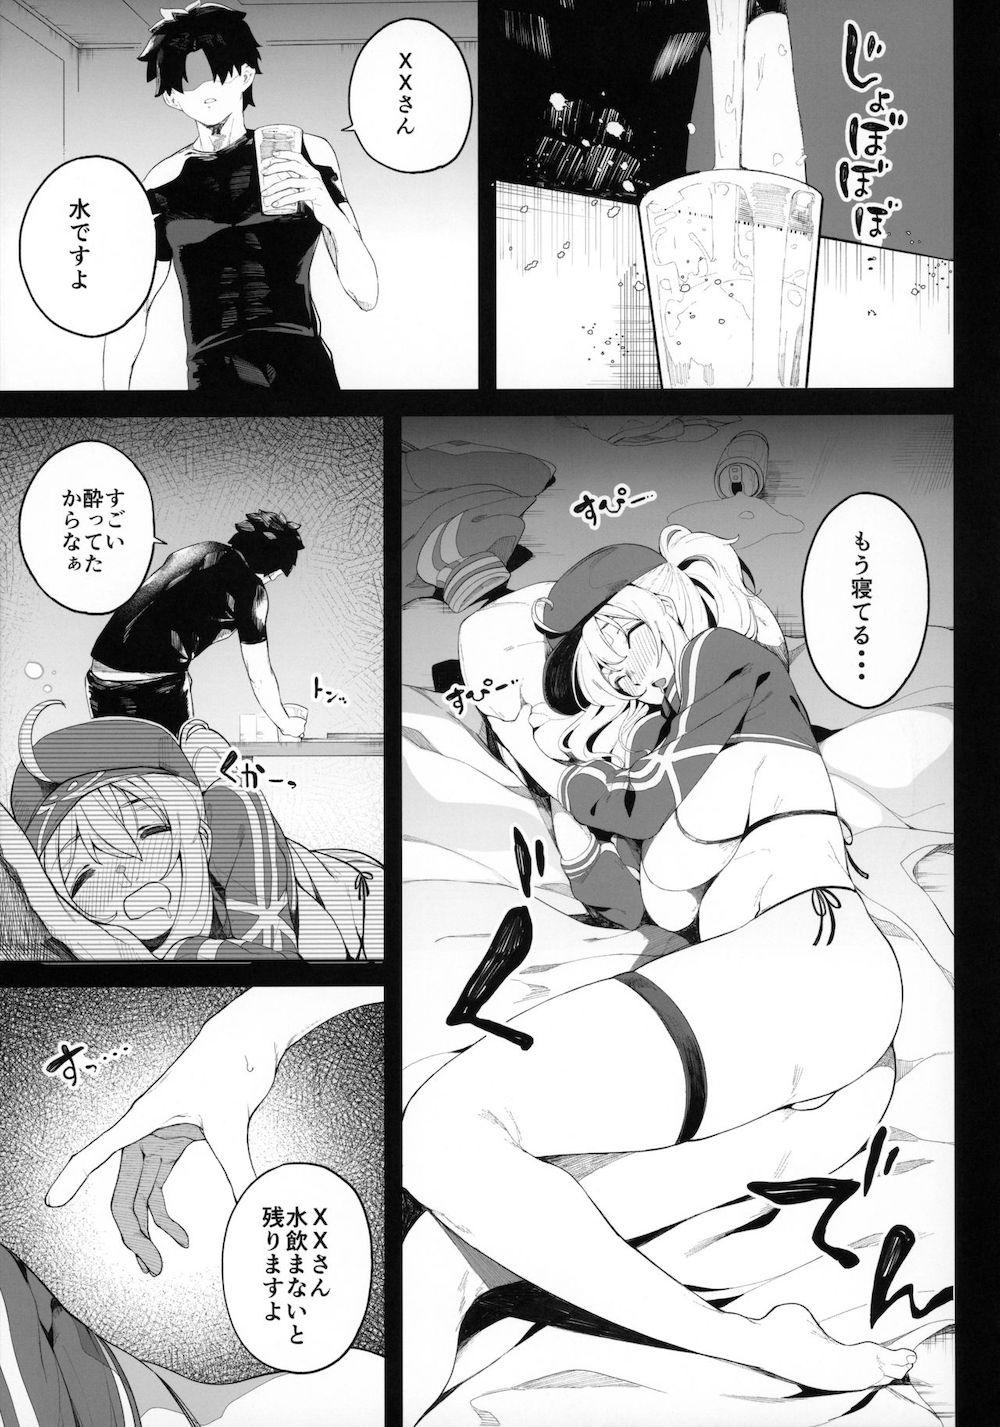 【Fate/Grand Order】酔い潰れて眠ってしまった謎のヒロインXXが欲情してカラダを触ってくるマスターに指導として女性優位な泥酔エッチ10